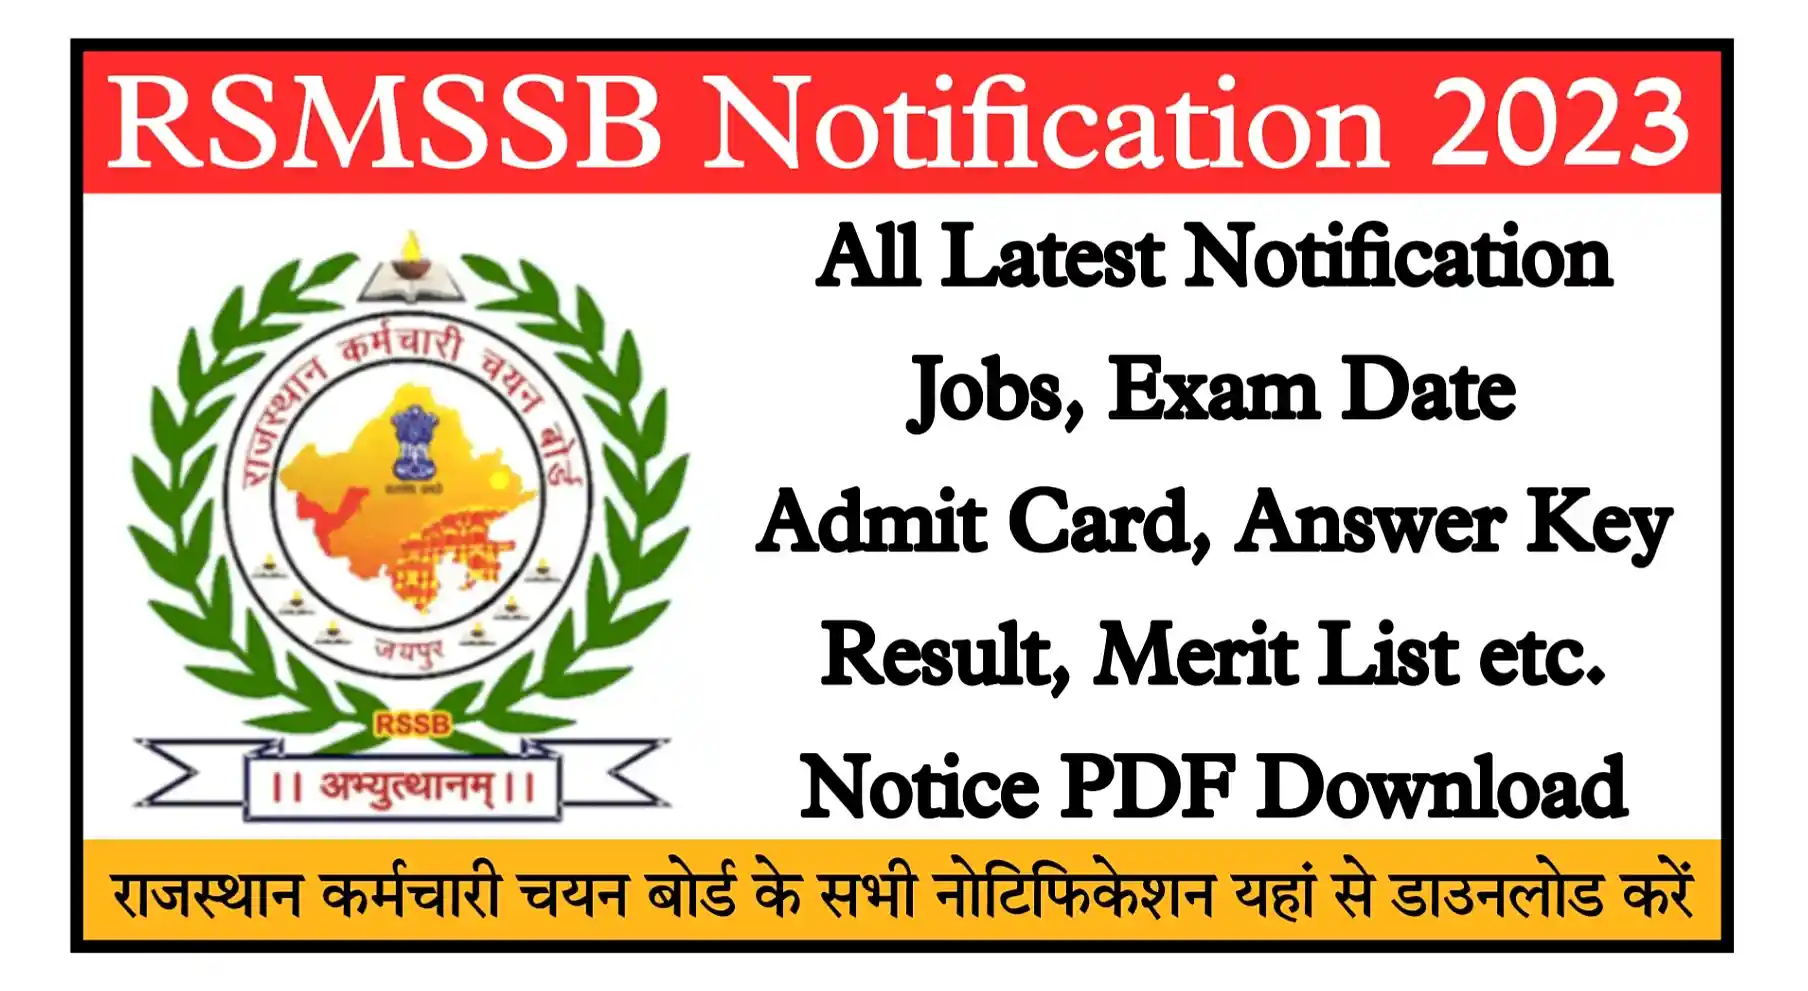 RSMSSB Notification 2023 राजस्थान कर्मचारी चयन बोर्ड द्वारा आयोजित सभी भर्तियों के Latest Notification यहां से डाउनलोड करें